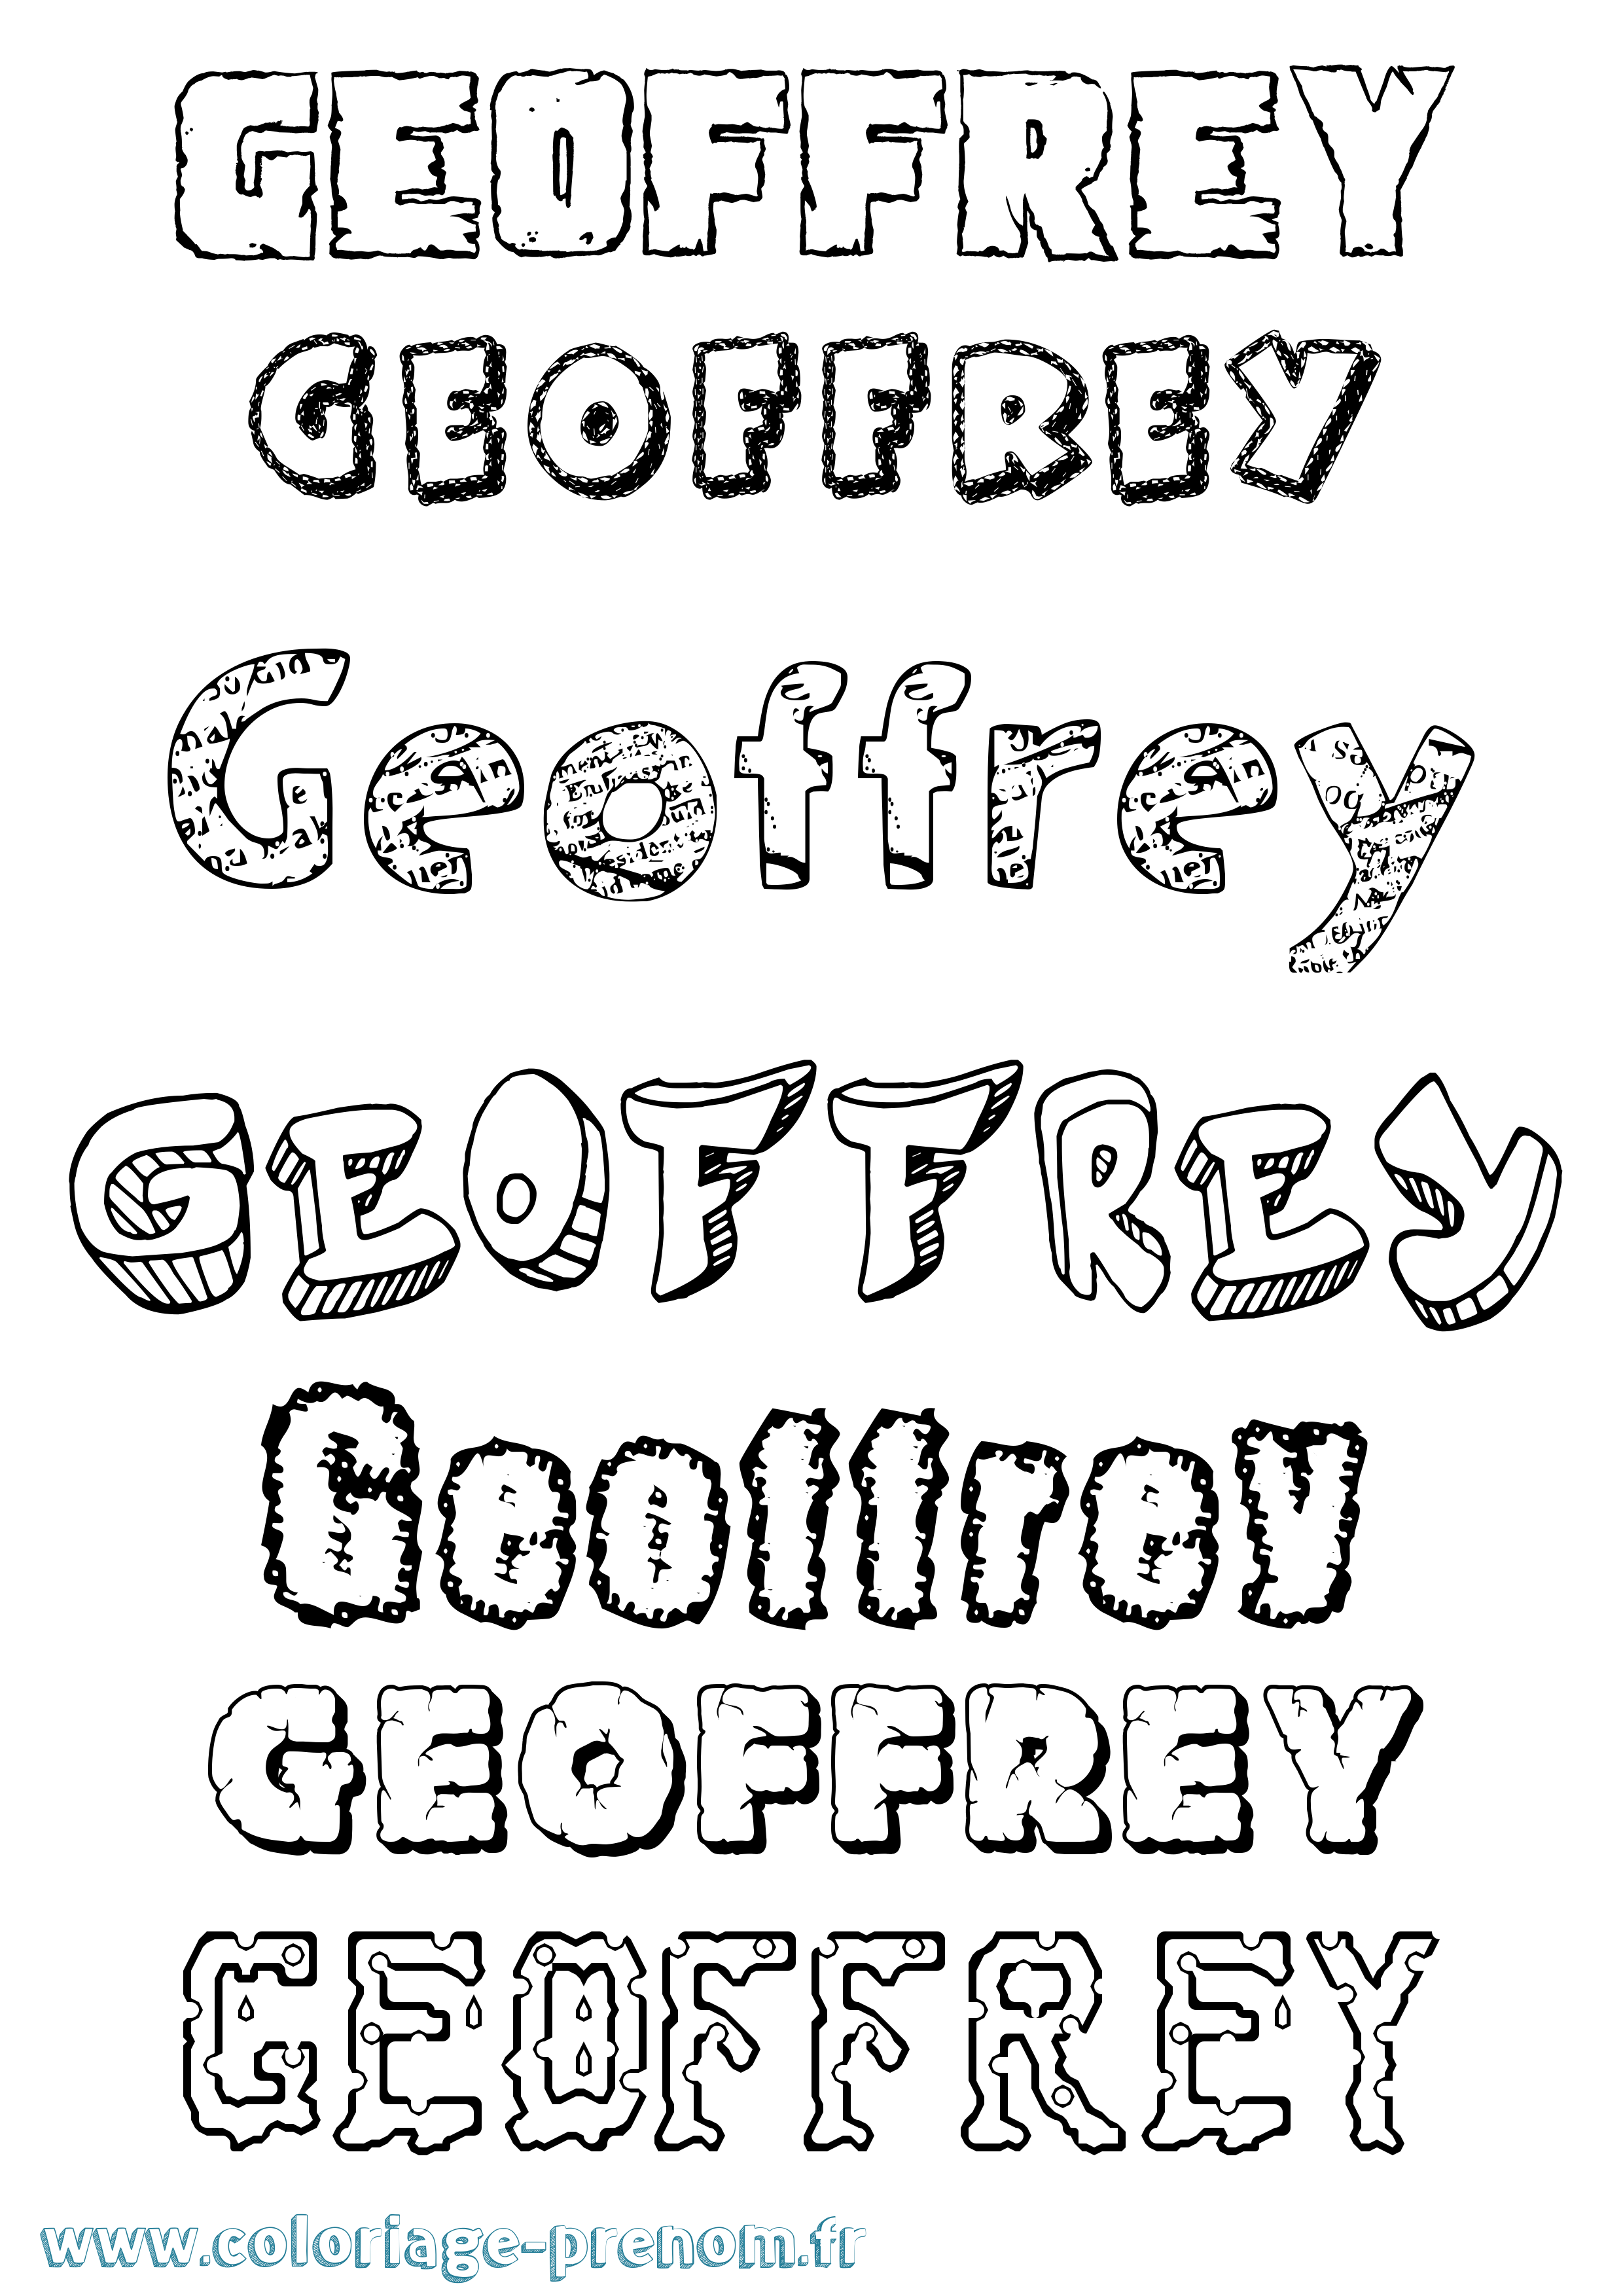 Coloriage prénom Geoffrey